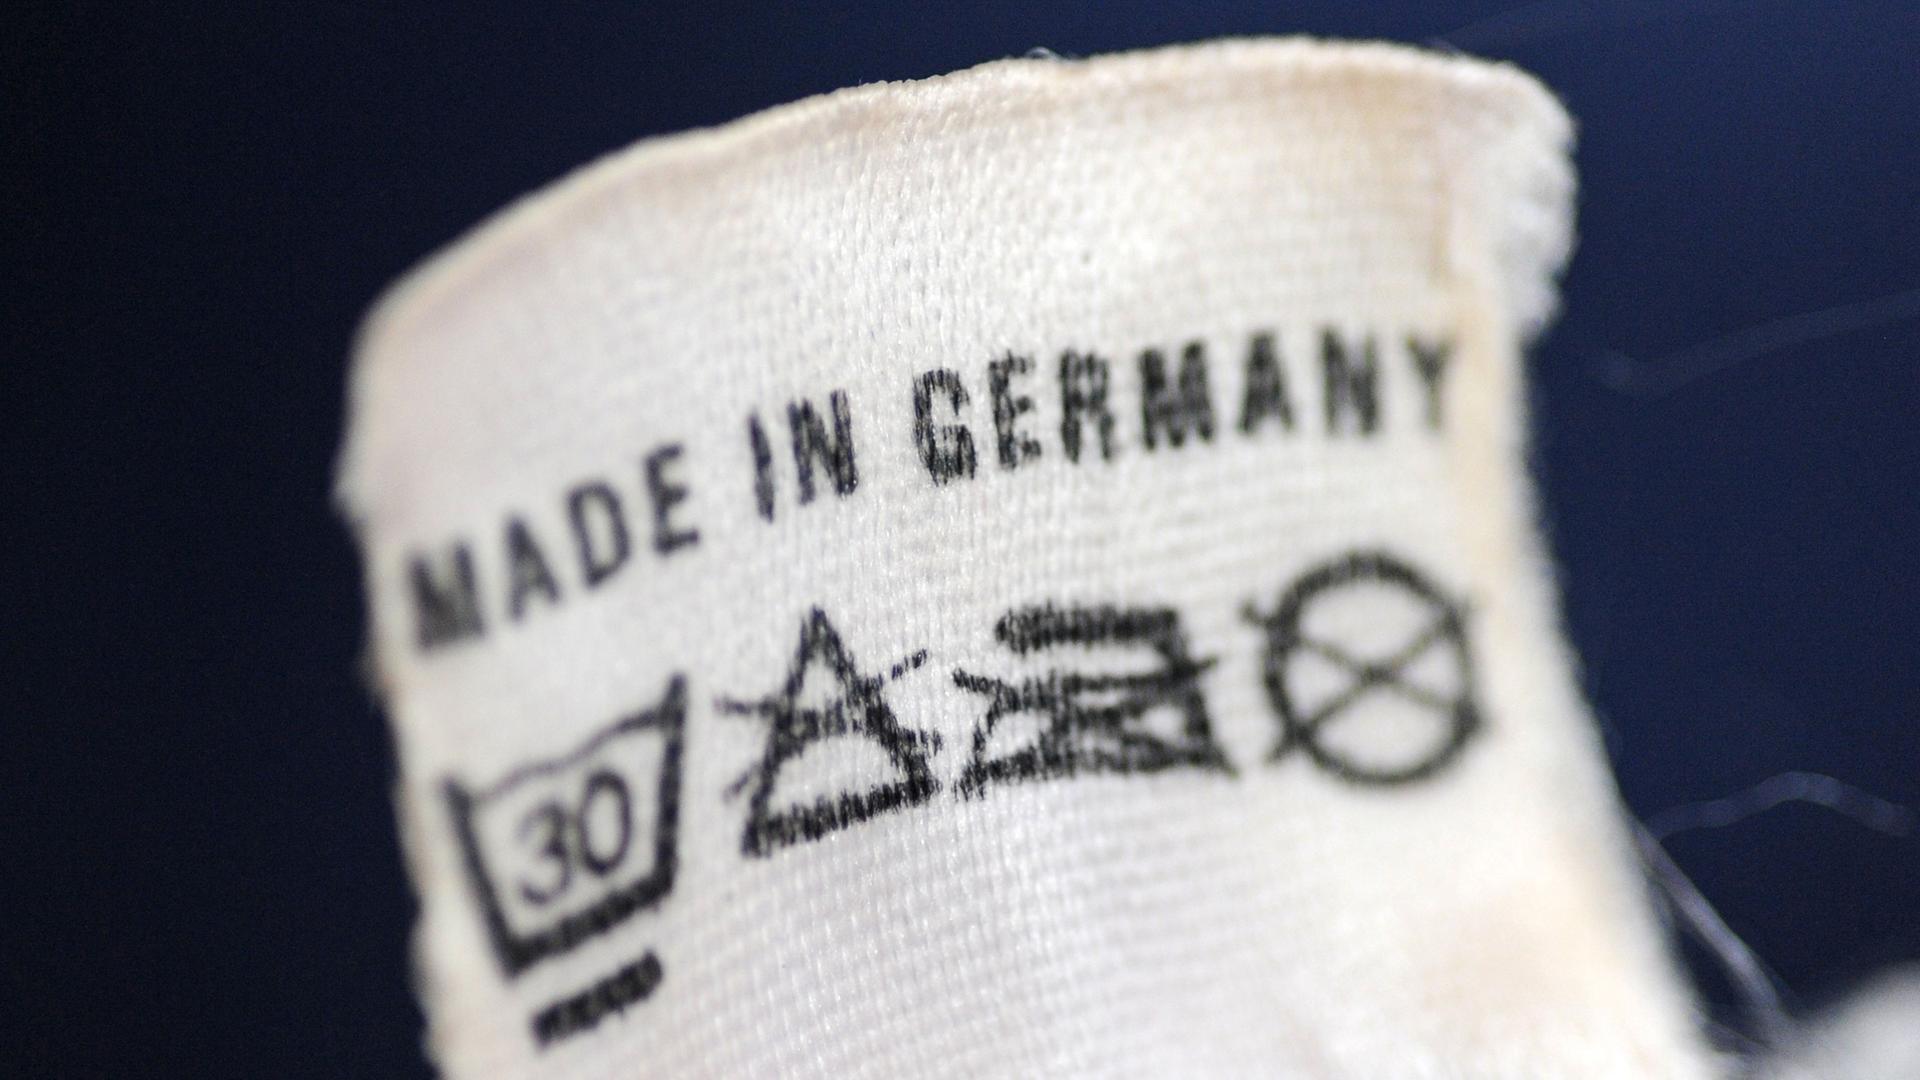 Der Schriftzug "Made in Germany" steht auf dem Etikett eines Trainingsanzugs.